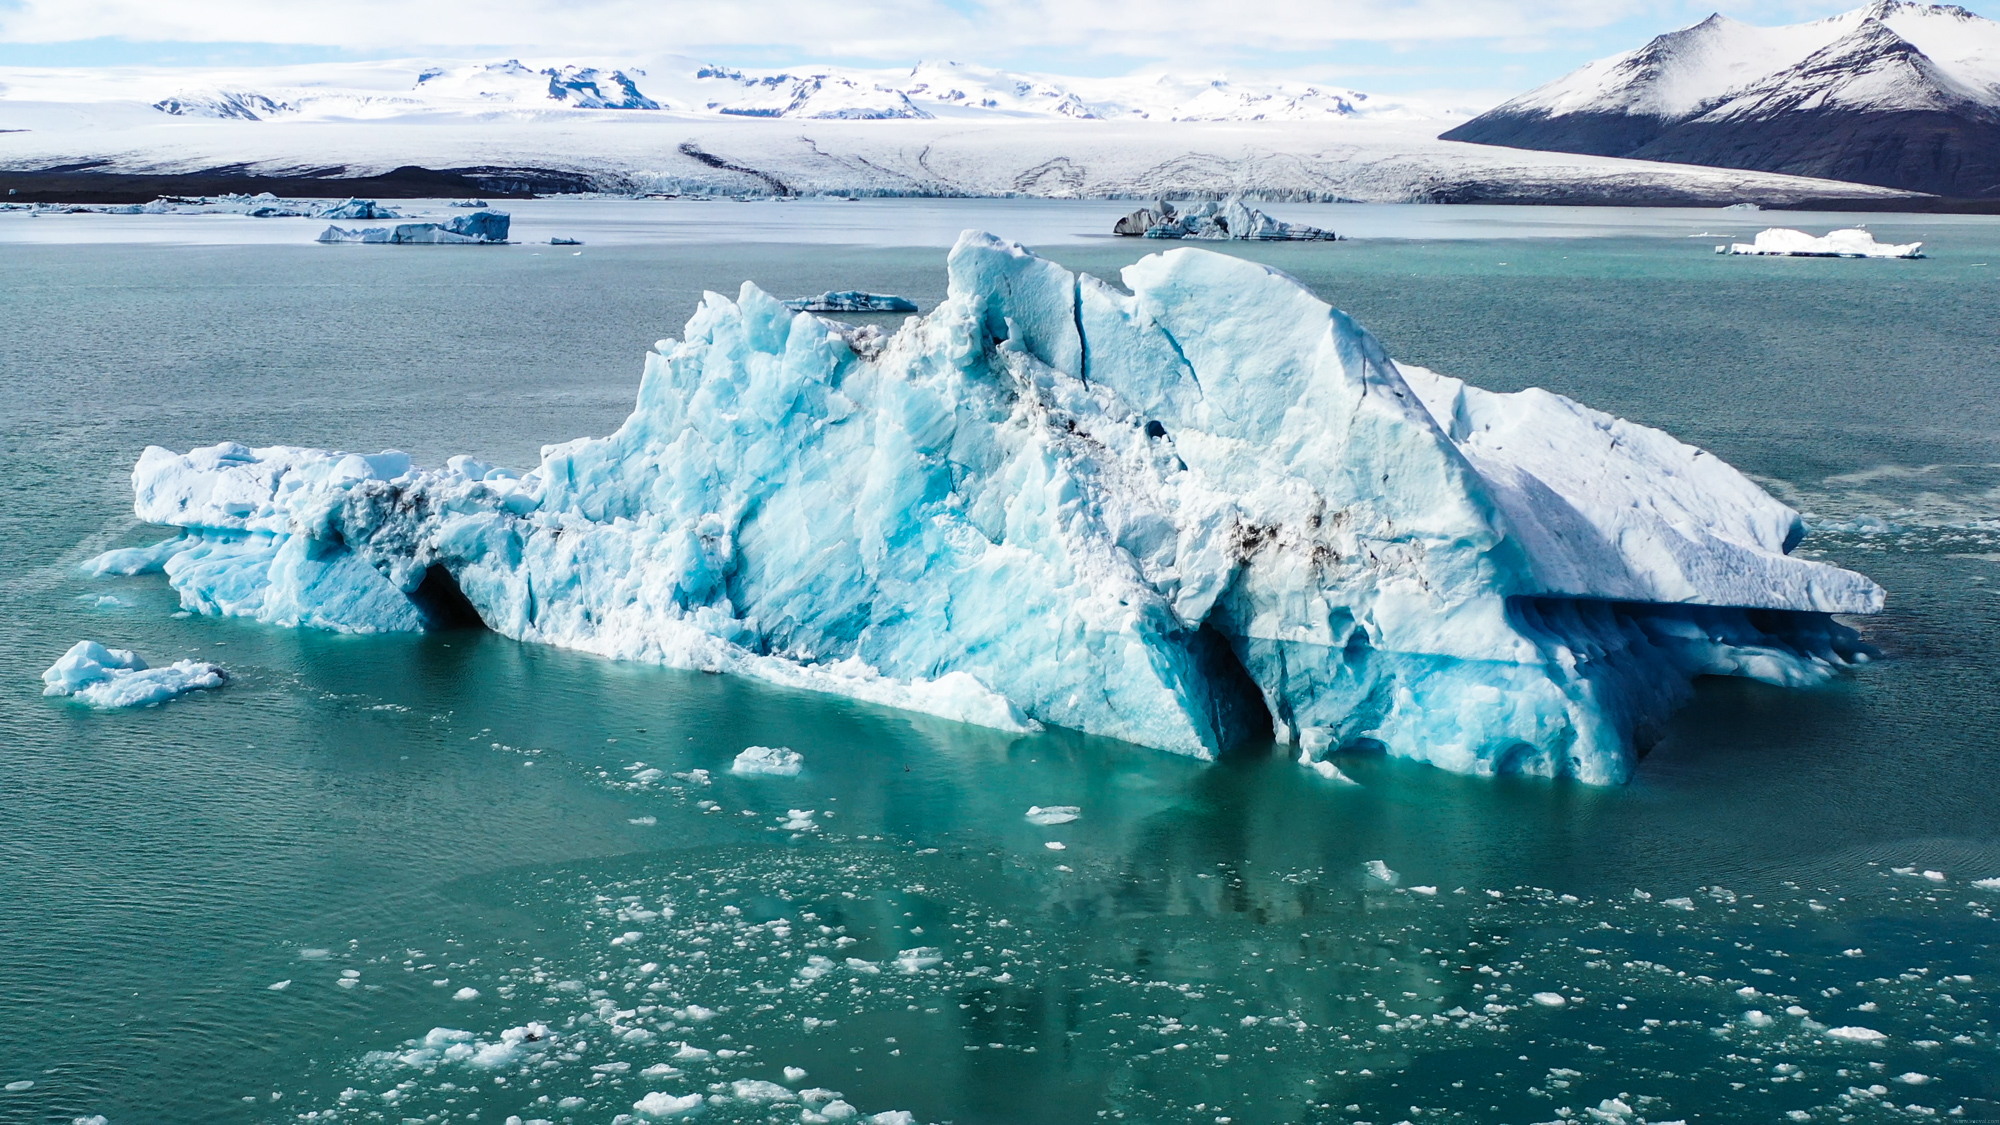 V jazere plávajú ľadovcové kryhy najrôznejších rozmerov a tvarov.